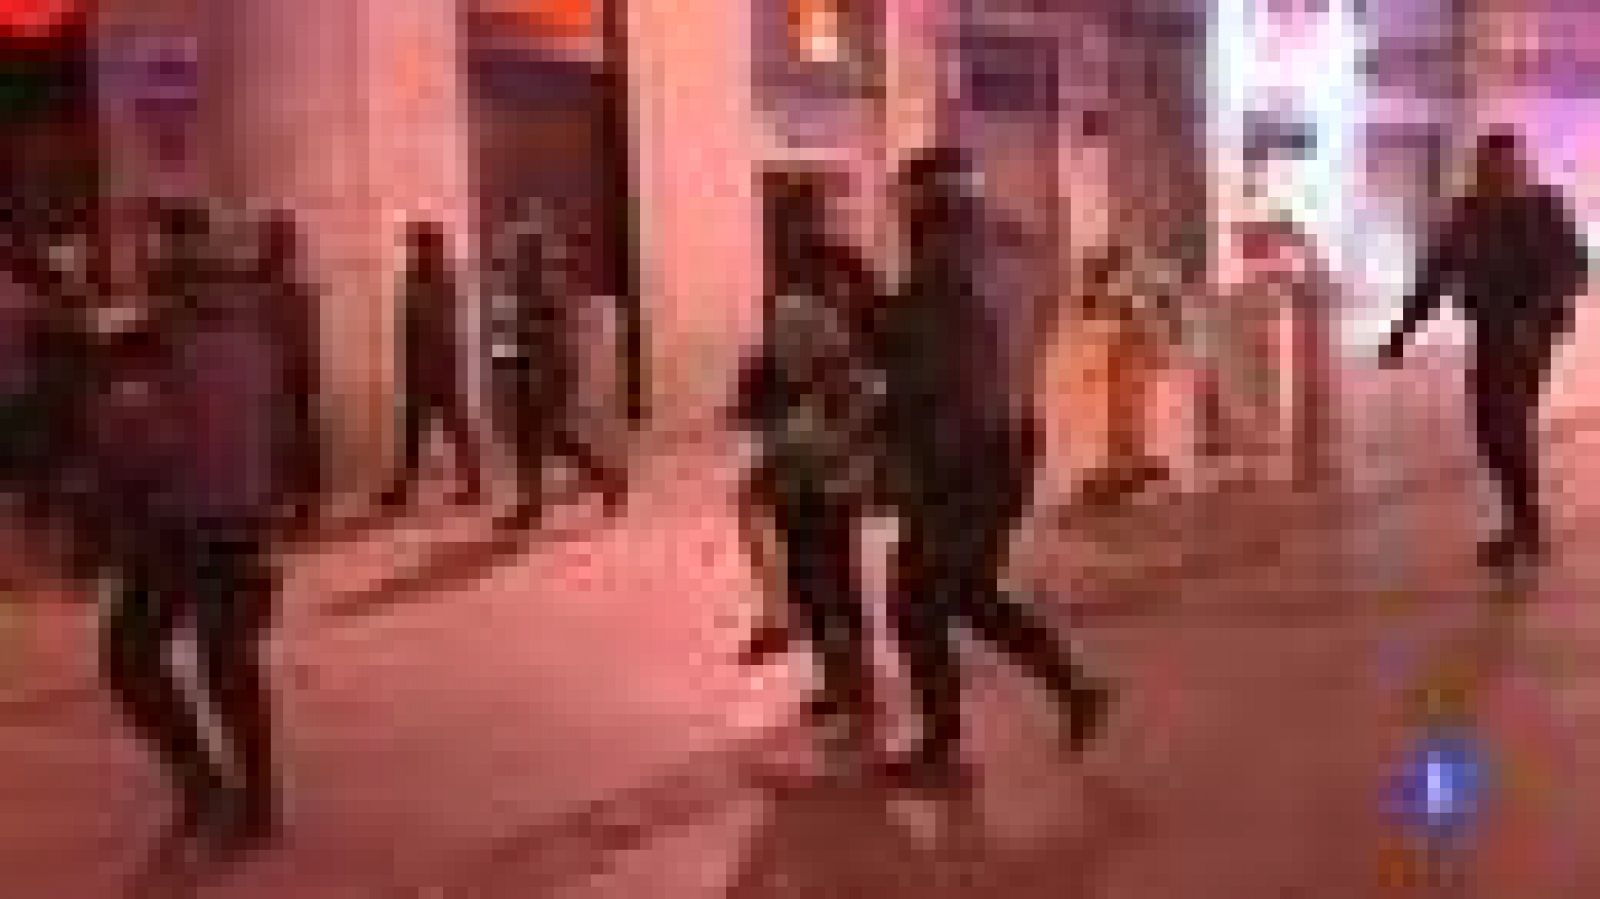 En torno a las cinco de la madrugada la policía desalojó la Puerta del Sol